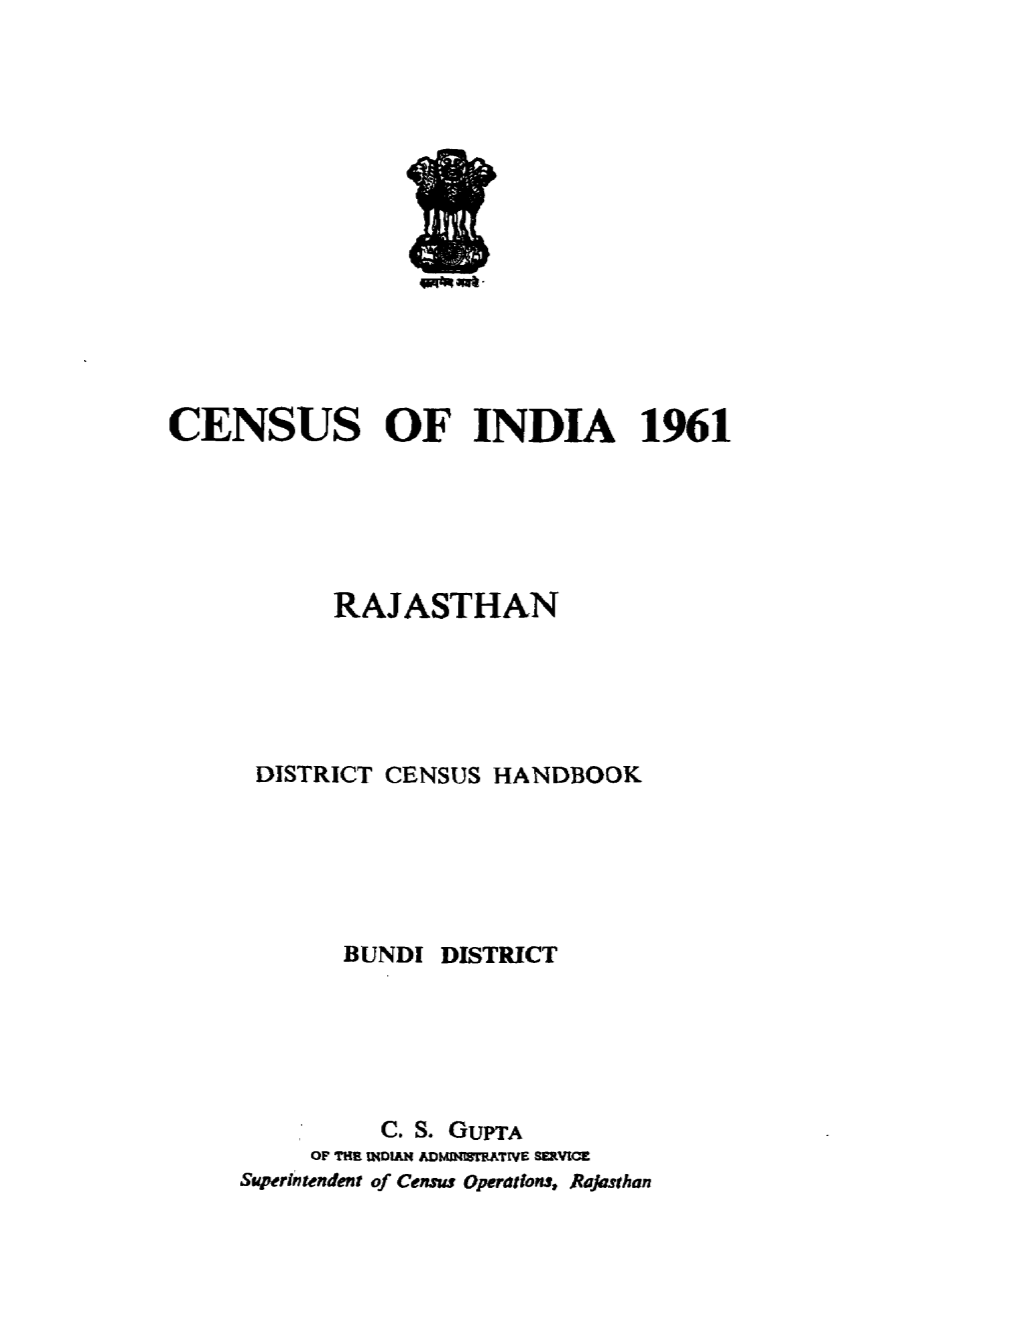 District Census Handbook, Bundi, Rajasthan